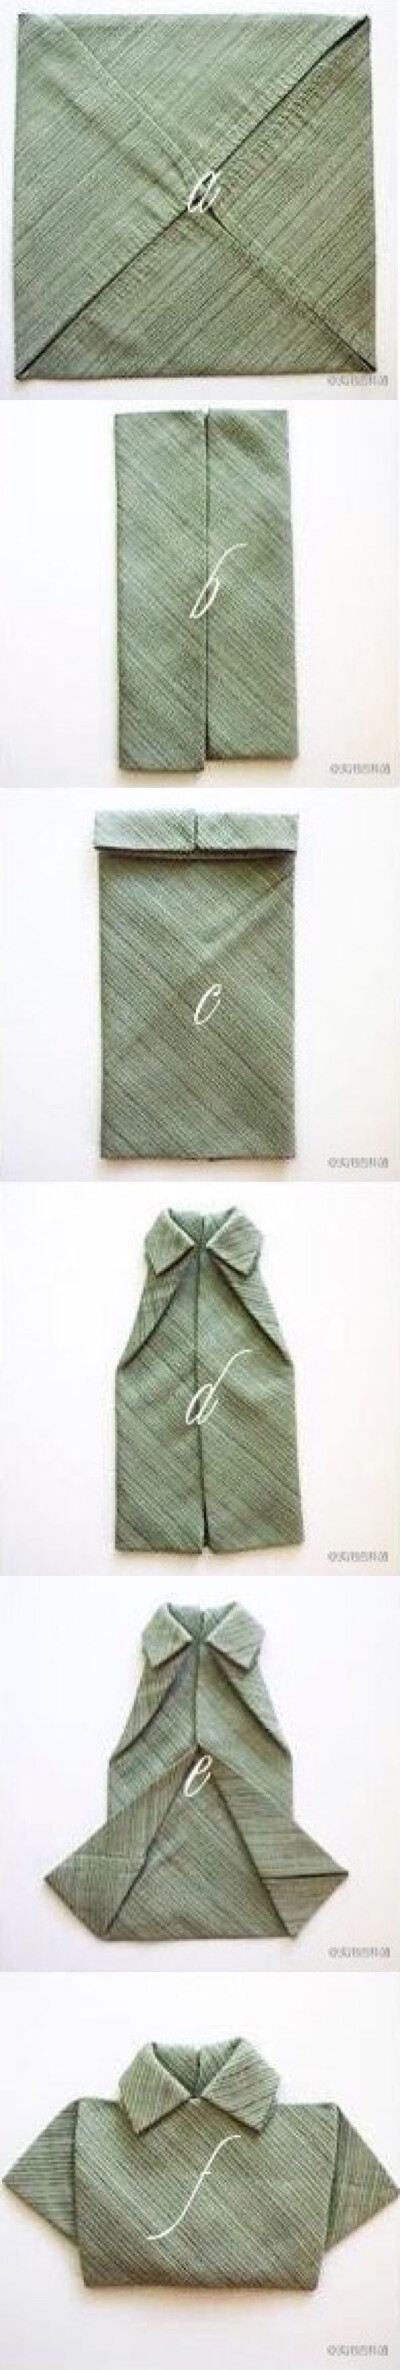 纸巾折衣服